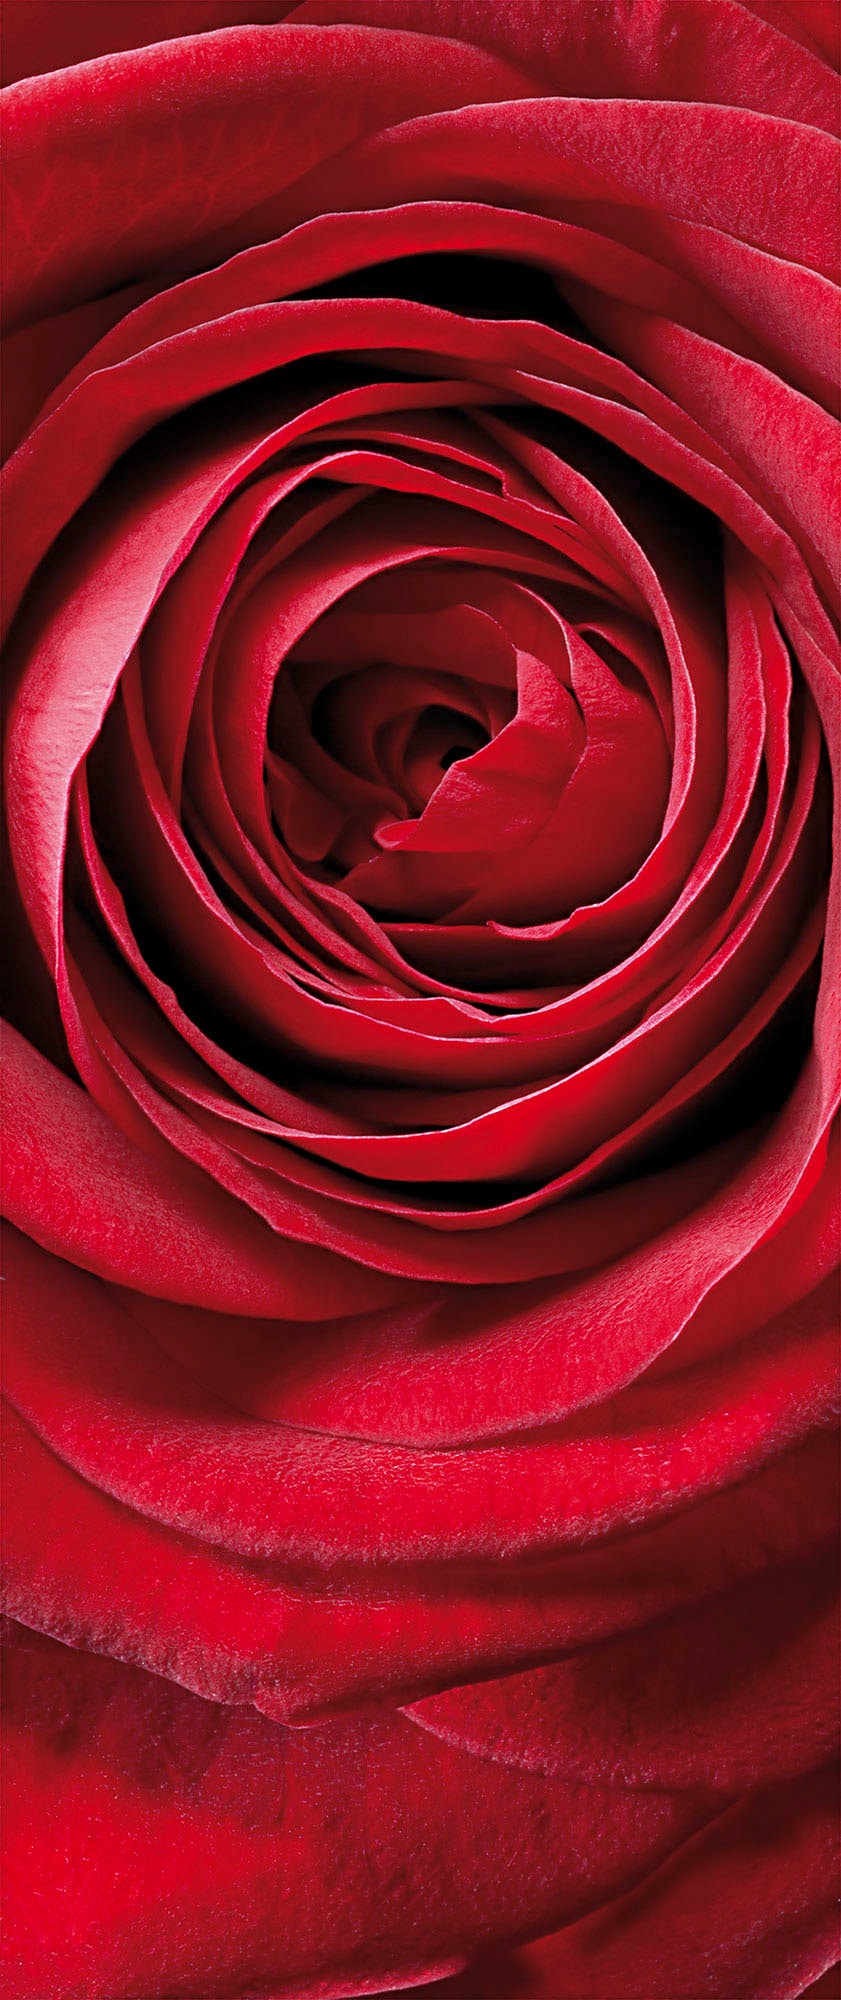 Fototapete »Fototapete - Red Rose - Größe 92 x 220 cm«, bedruckt